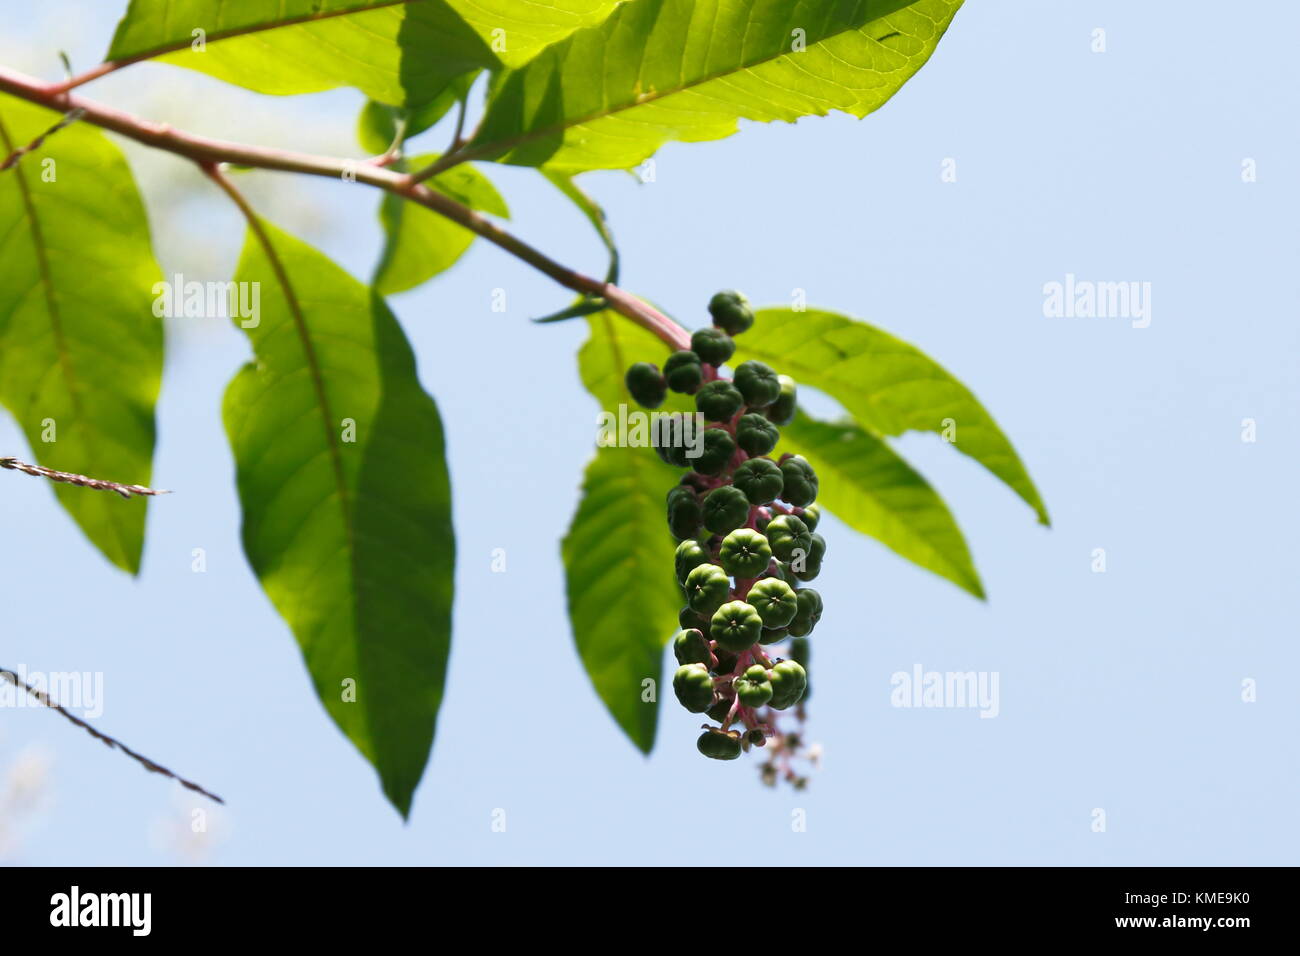 Kermesbeere mit blau schwarz farbenen Beeren Stockfoto